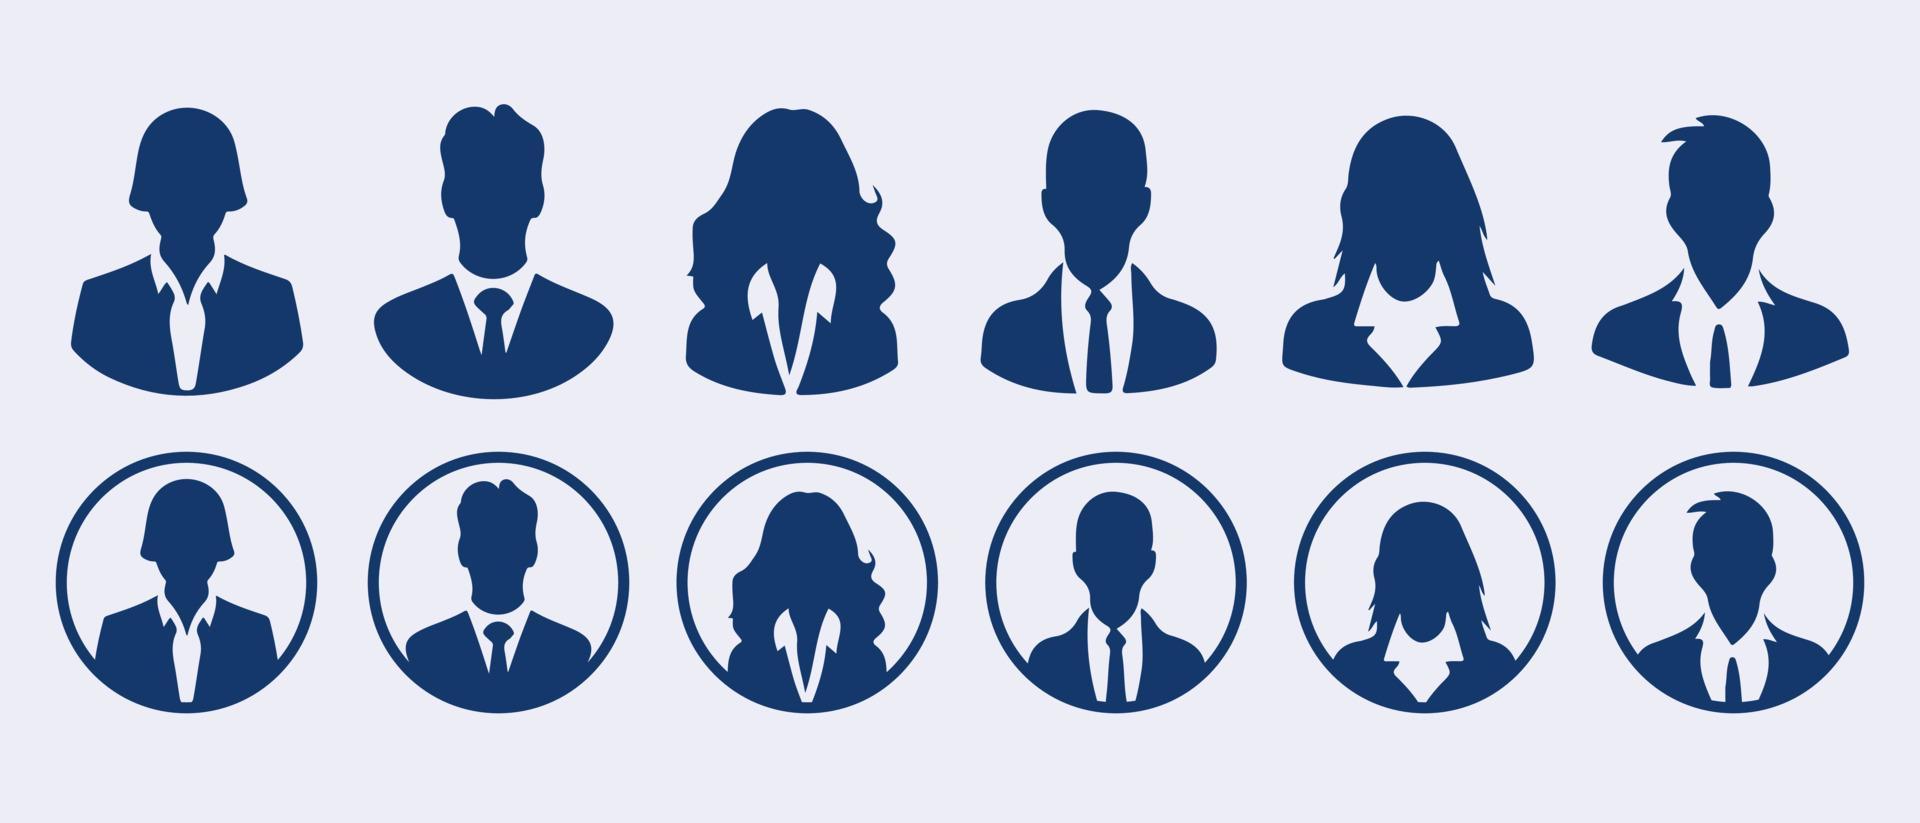 Geschäft Menschen Benutzerbild Profil Kopf Symbol Silhouette einstellen Geschäft Mann Frau Benutzer Gesicht Avatare Symbole Silhouetten Vektor Illustration